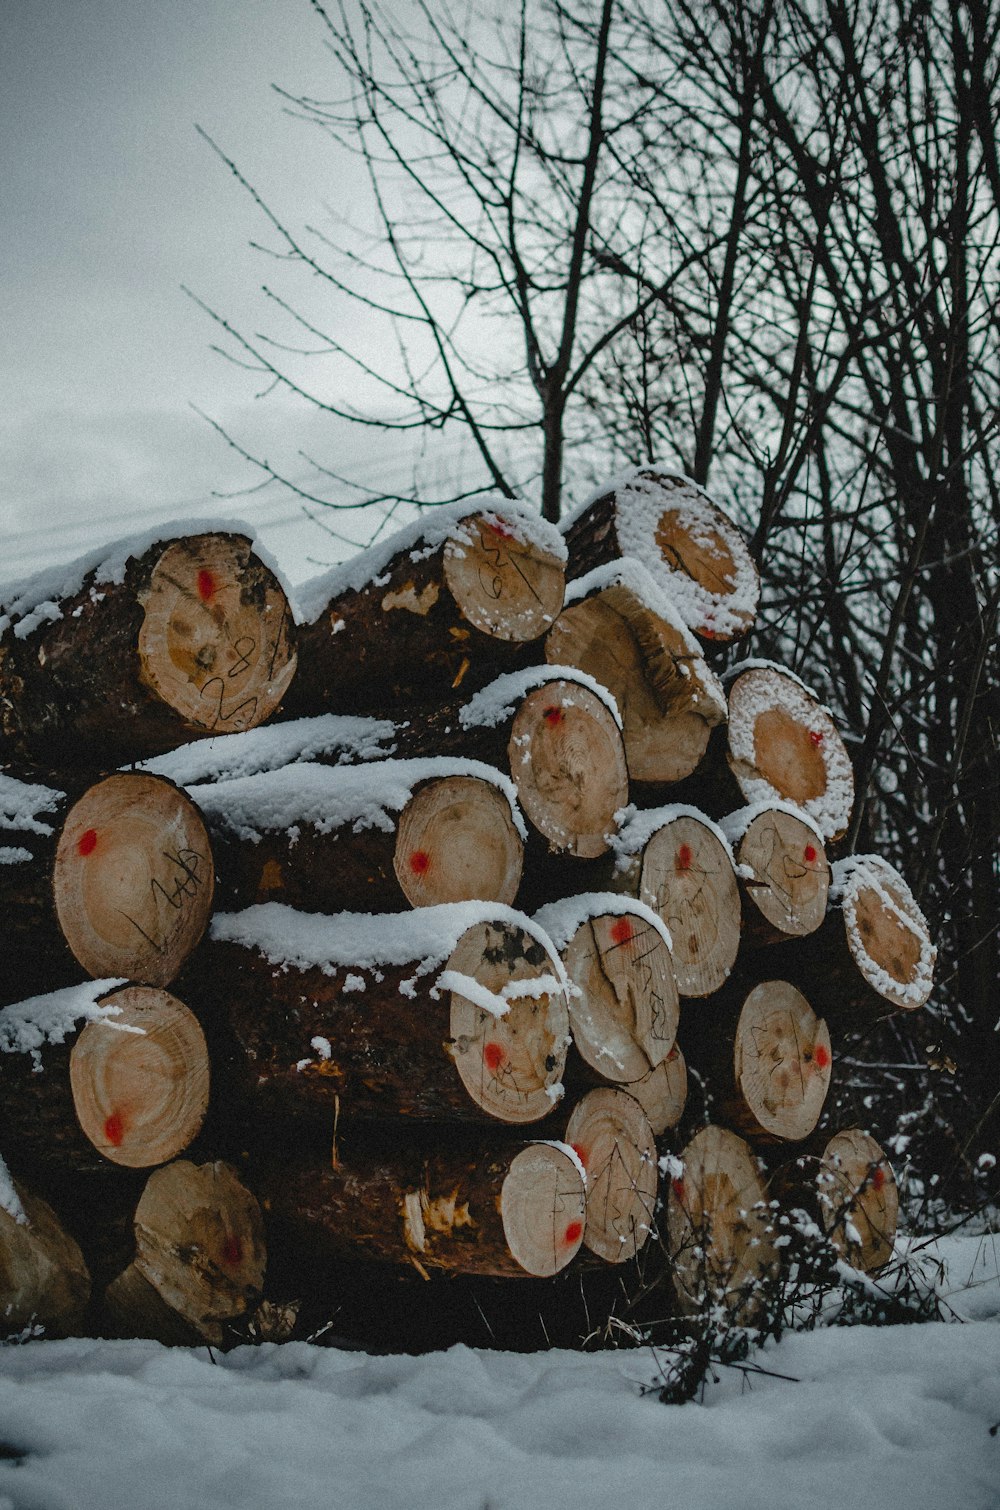 lugs cobertos de neve perto de árvores nuas